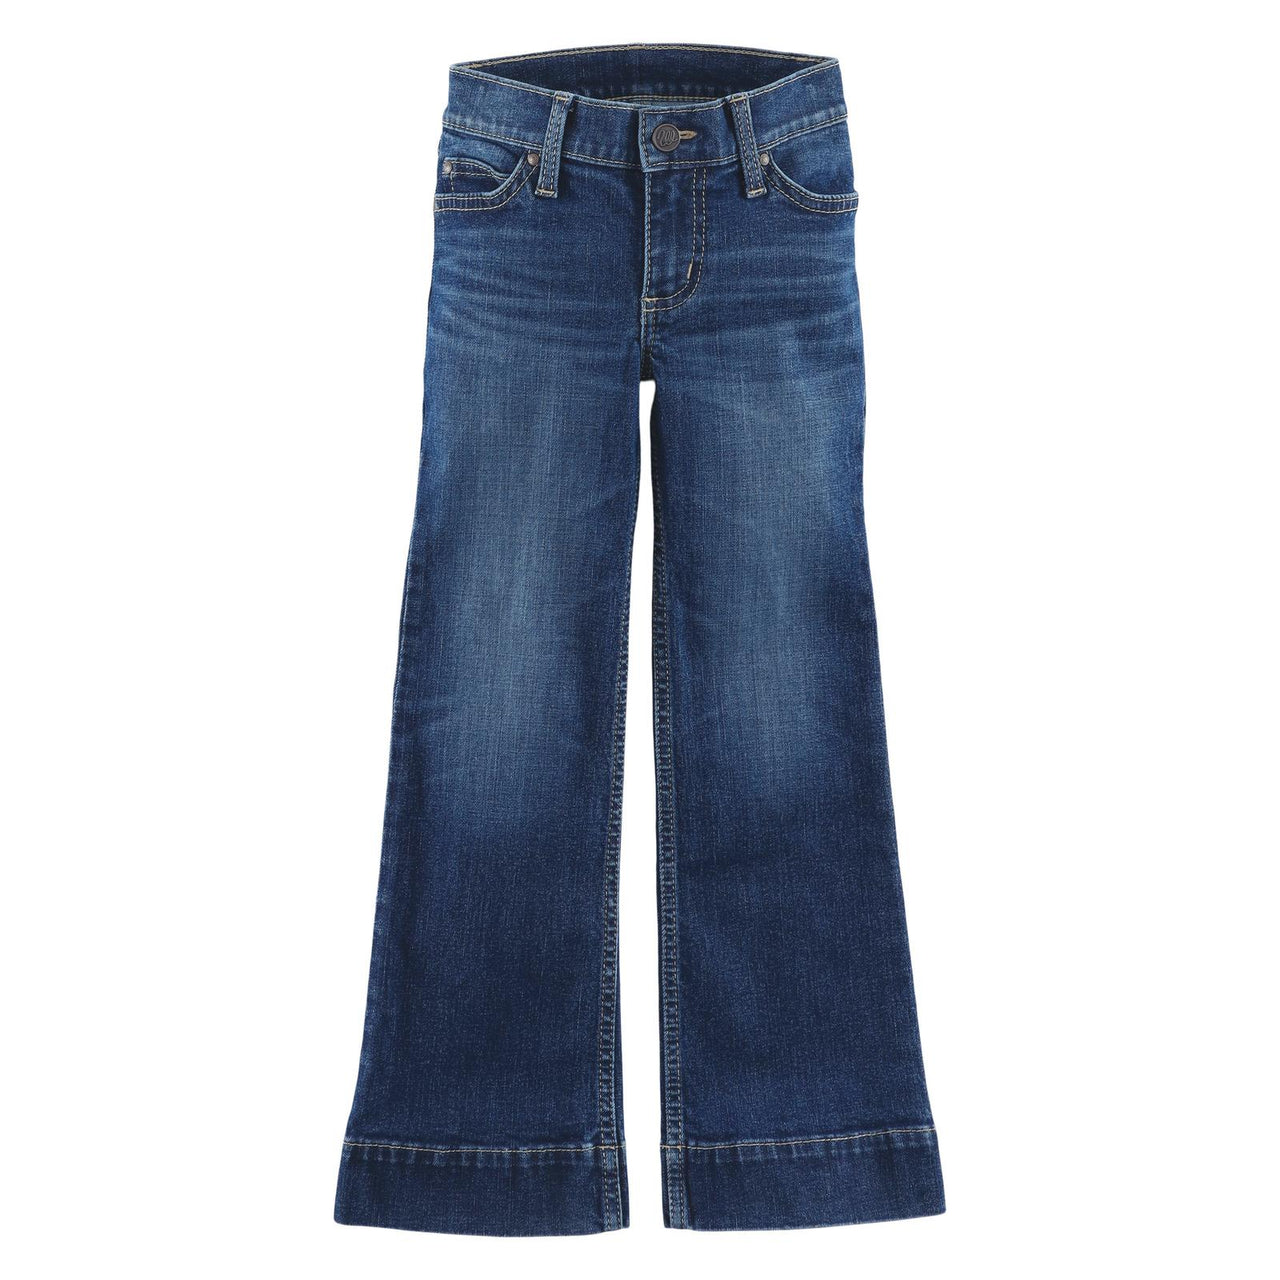 Wrangler Girl's Retro Trouser Jeans - Whitley